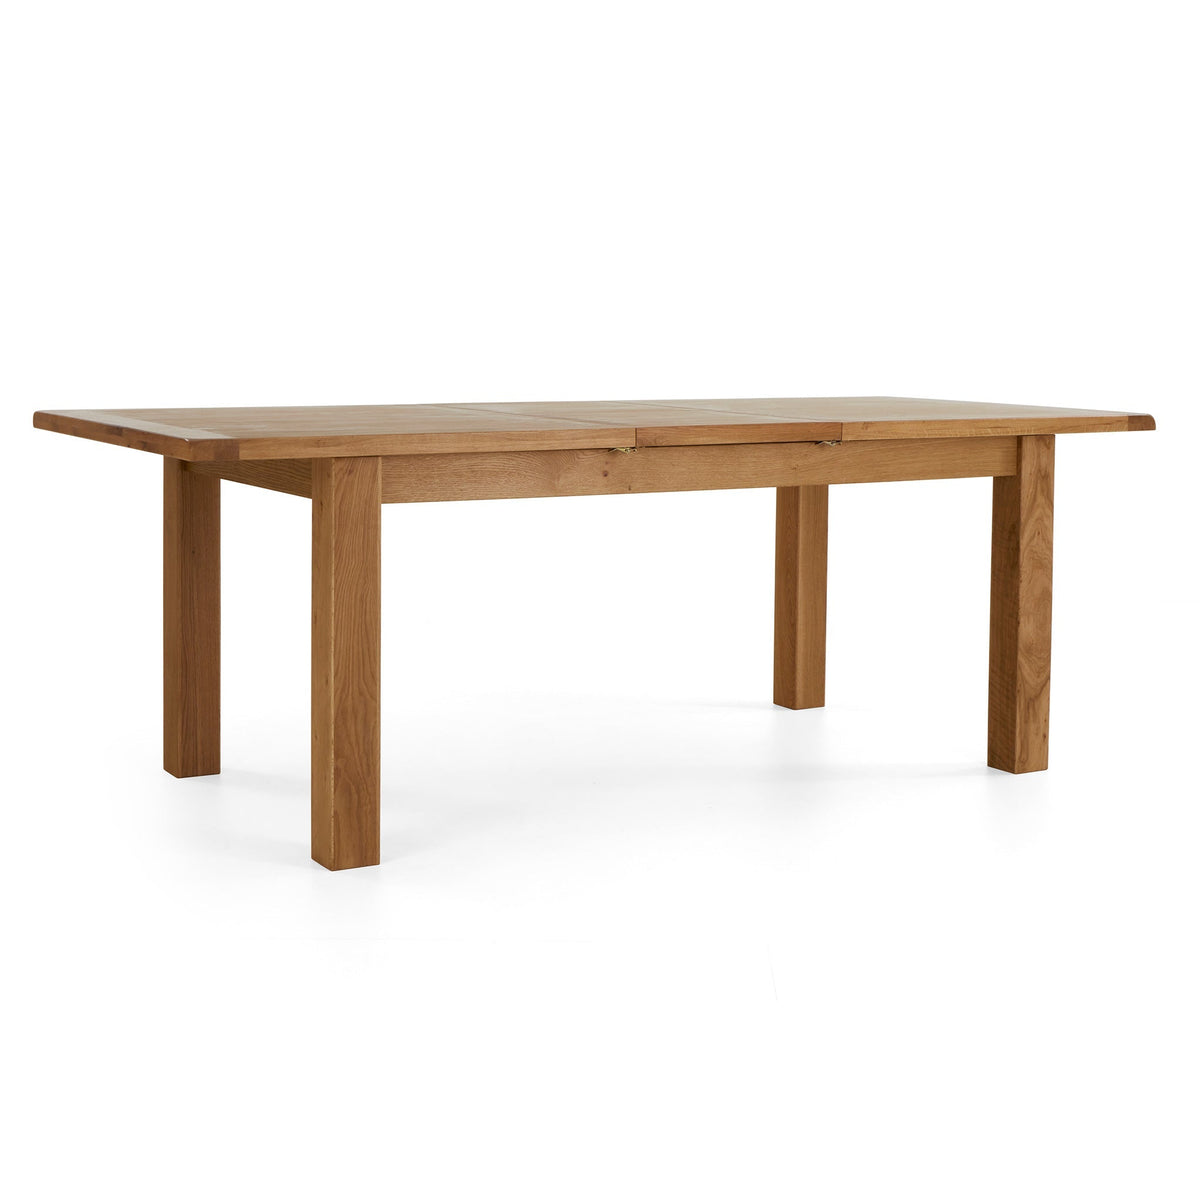 Zelah Oak Large Extending Dining Table 180-230cm from Roseland Furniture